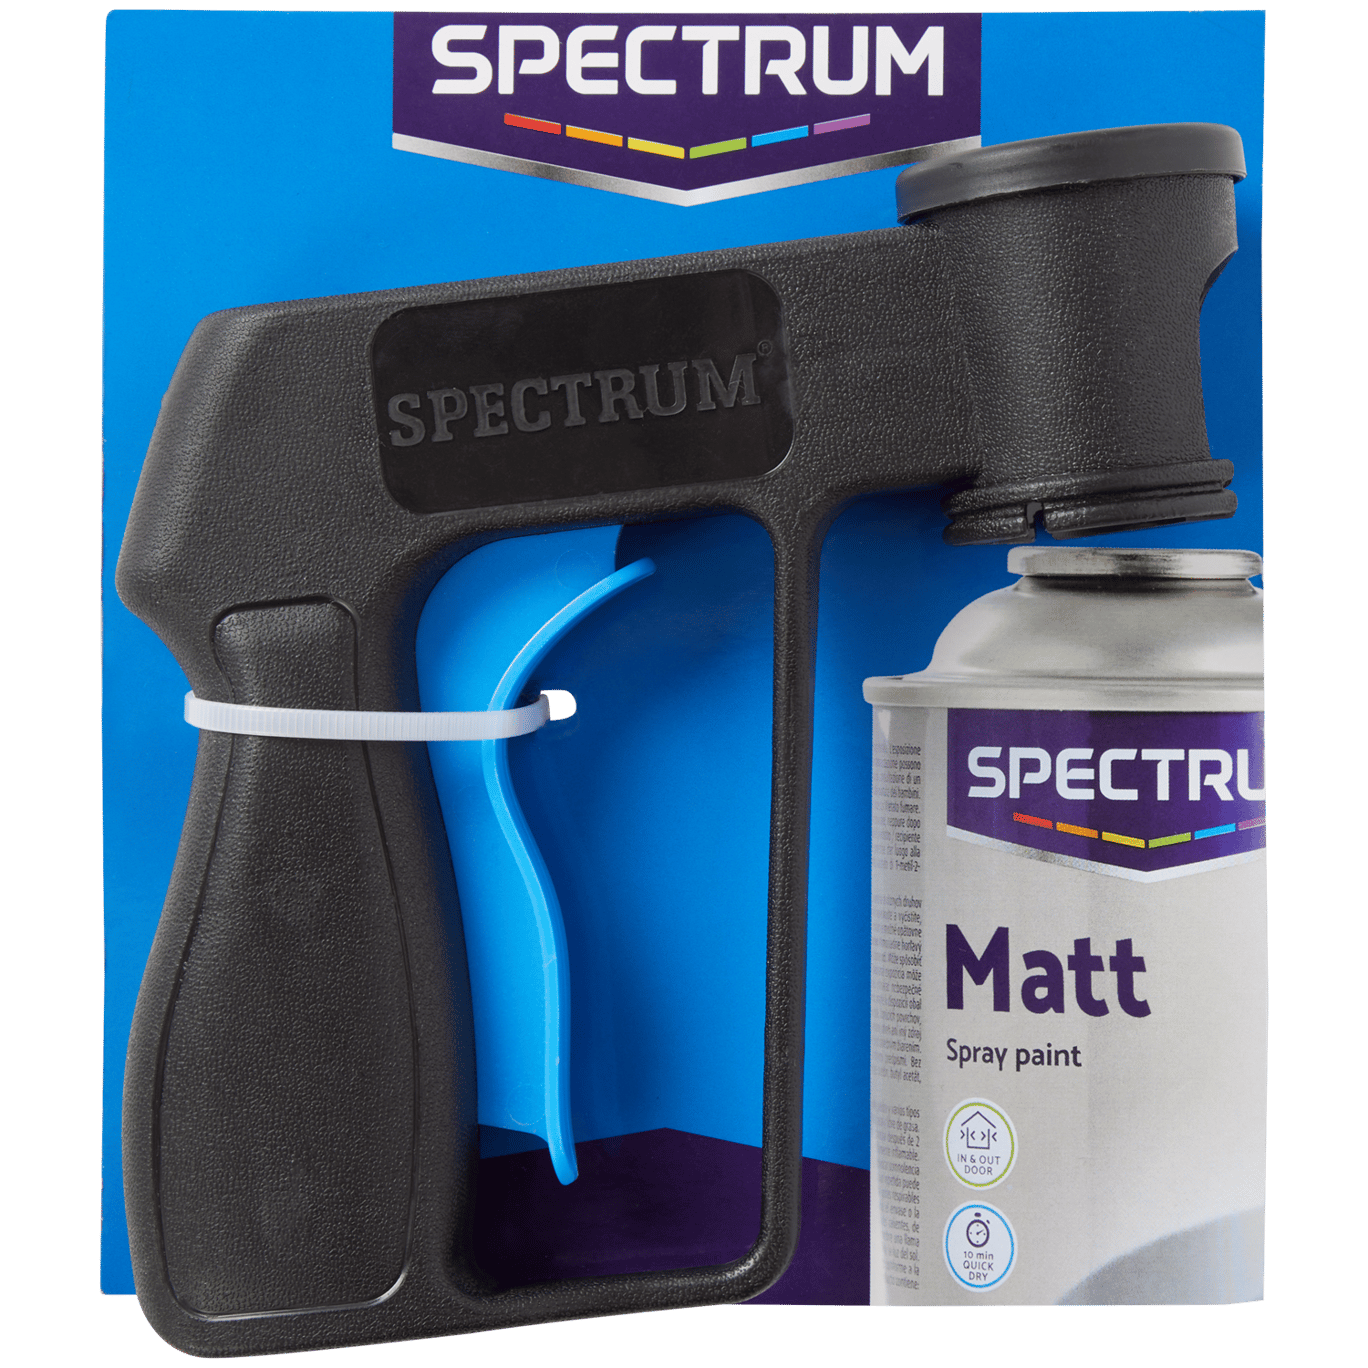 scherp Onhandig verbergen Spectrum spuitverf-pistool | Action.com